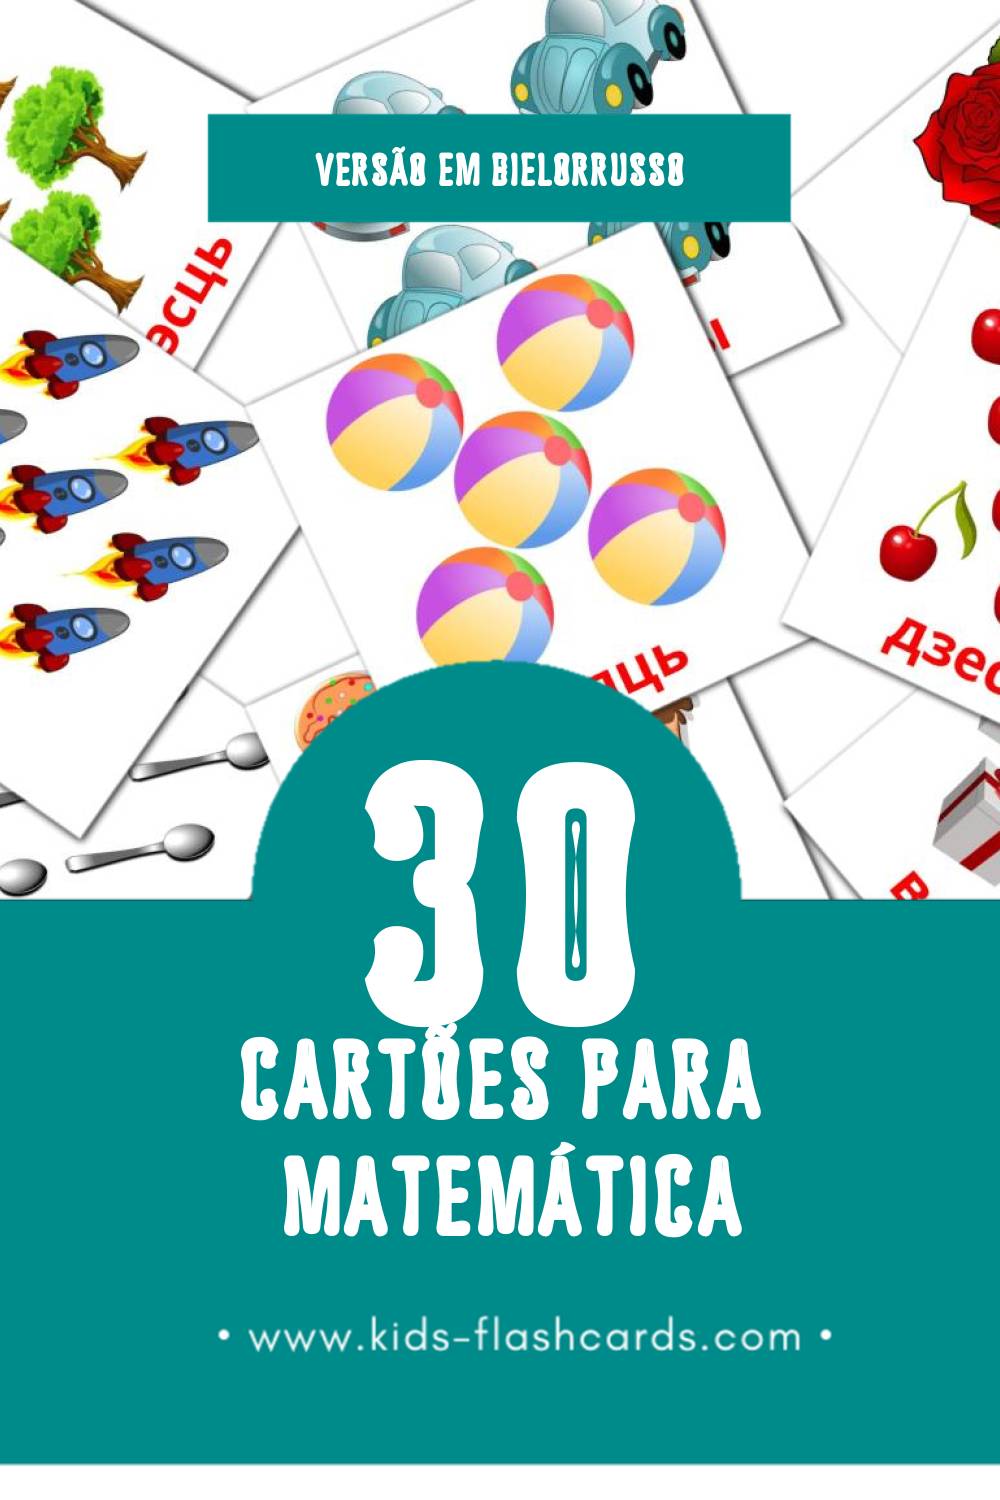 Flashcards de Matemáticas Visuais para Toddlers (10 cartões em Bielorrusso)